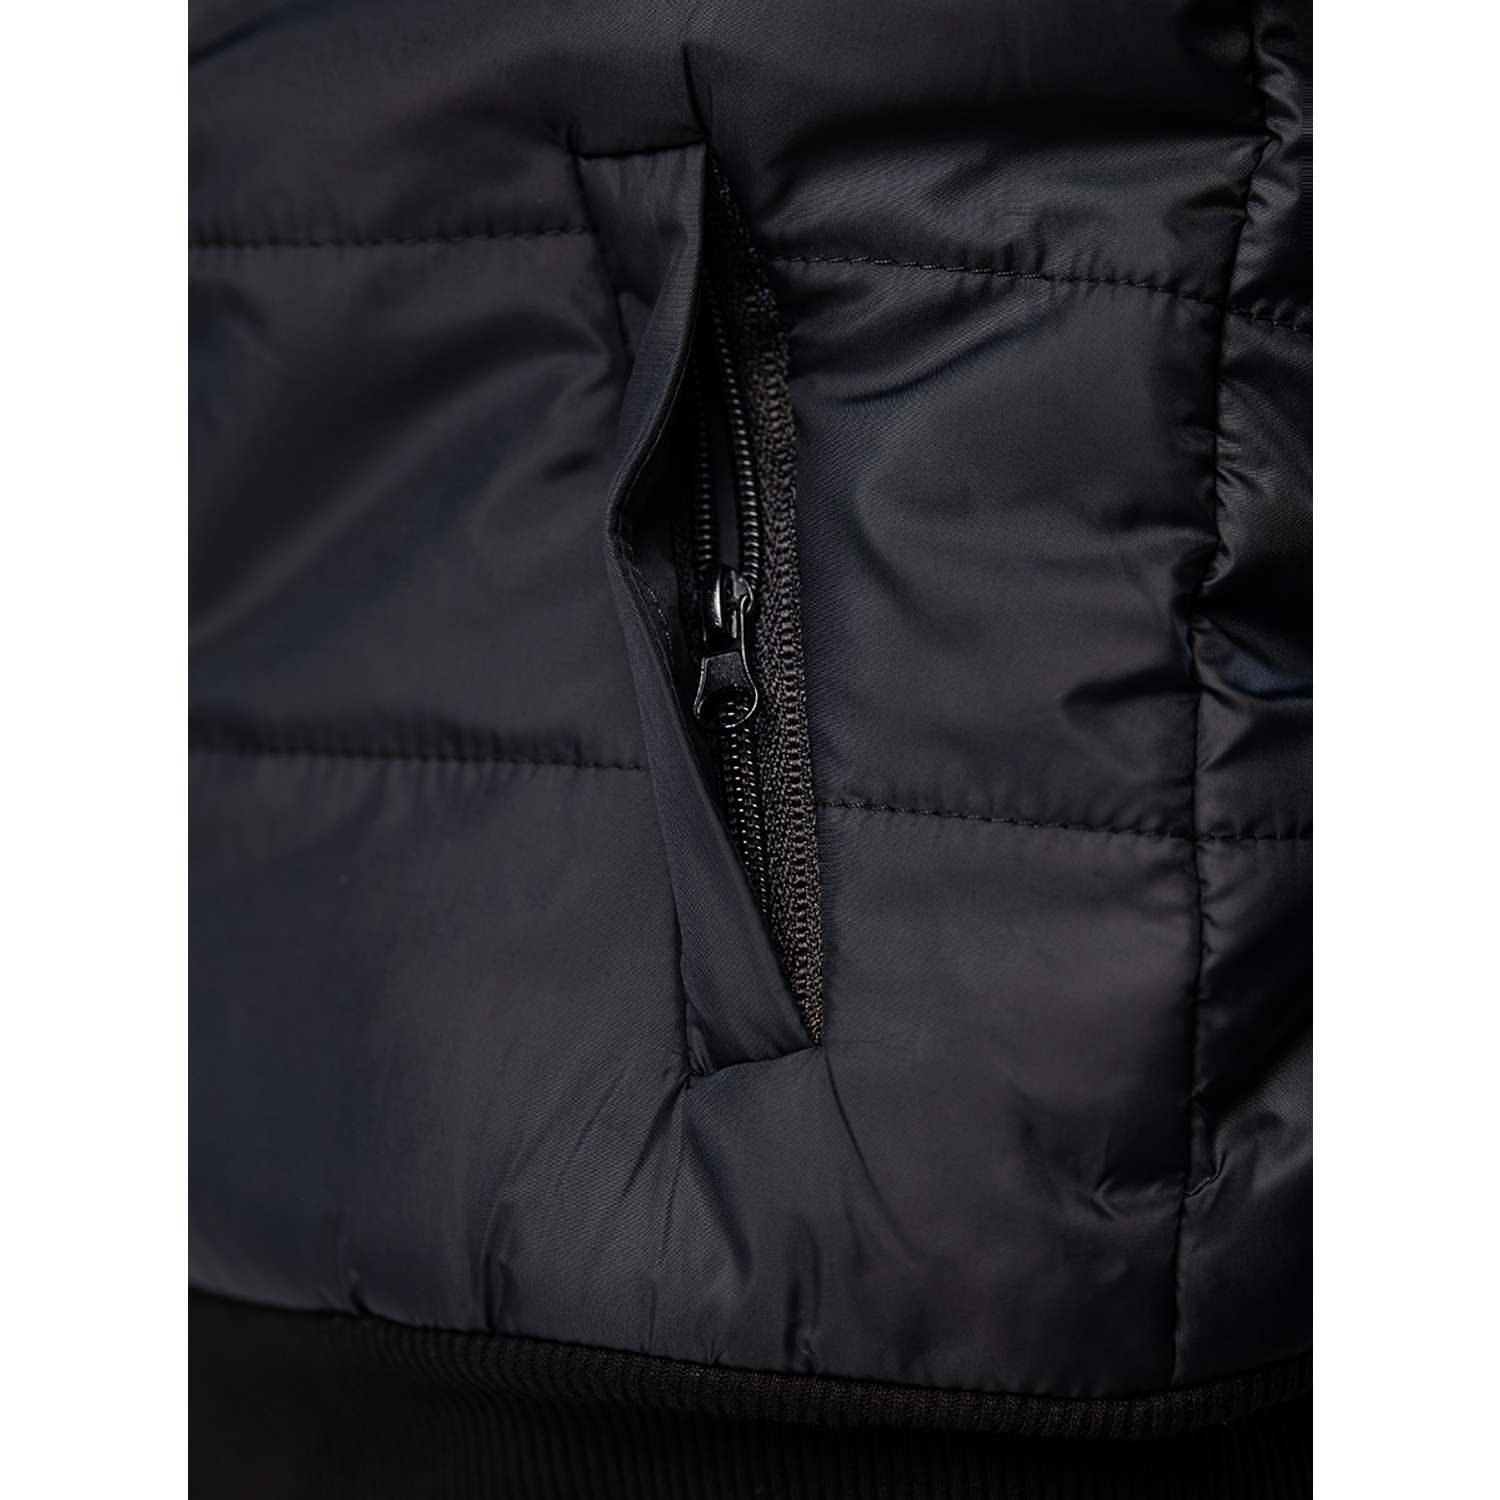 Куртка RODOS М-222/1д_Милано/Черный_светло-серый - фото 8